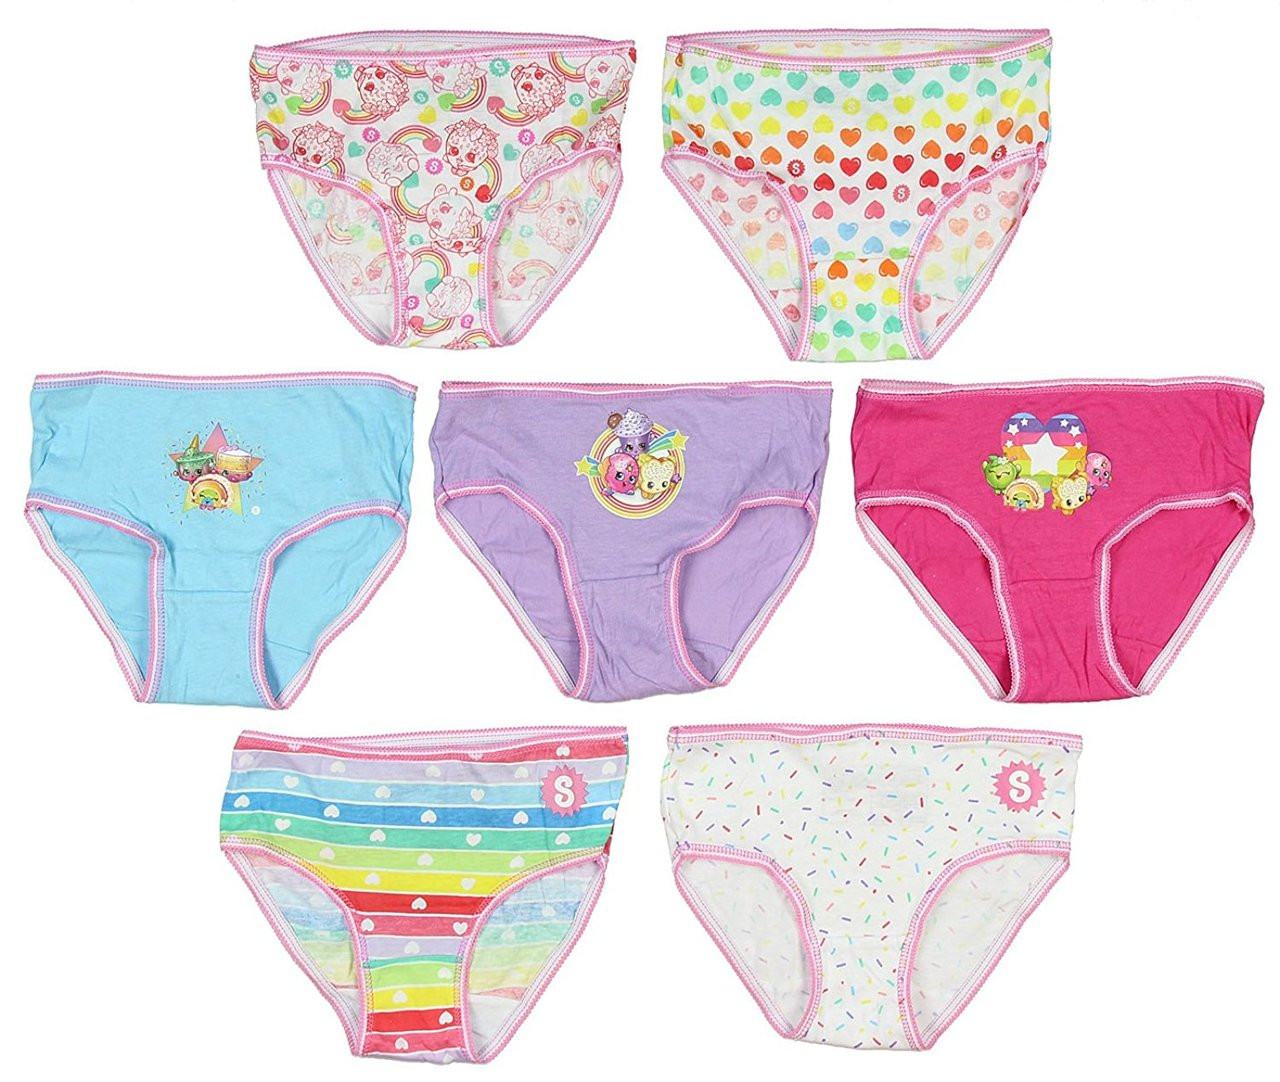 Dora the Explorer Summer Fun Underwear 7-Pack